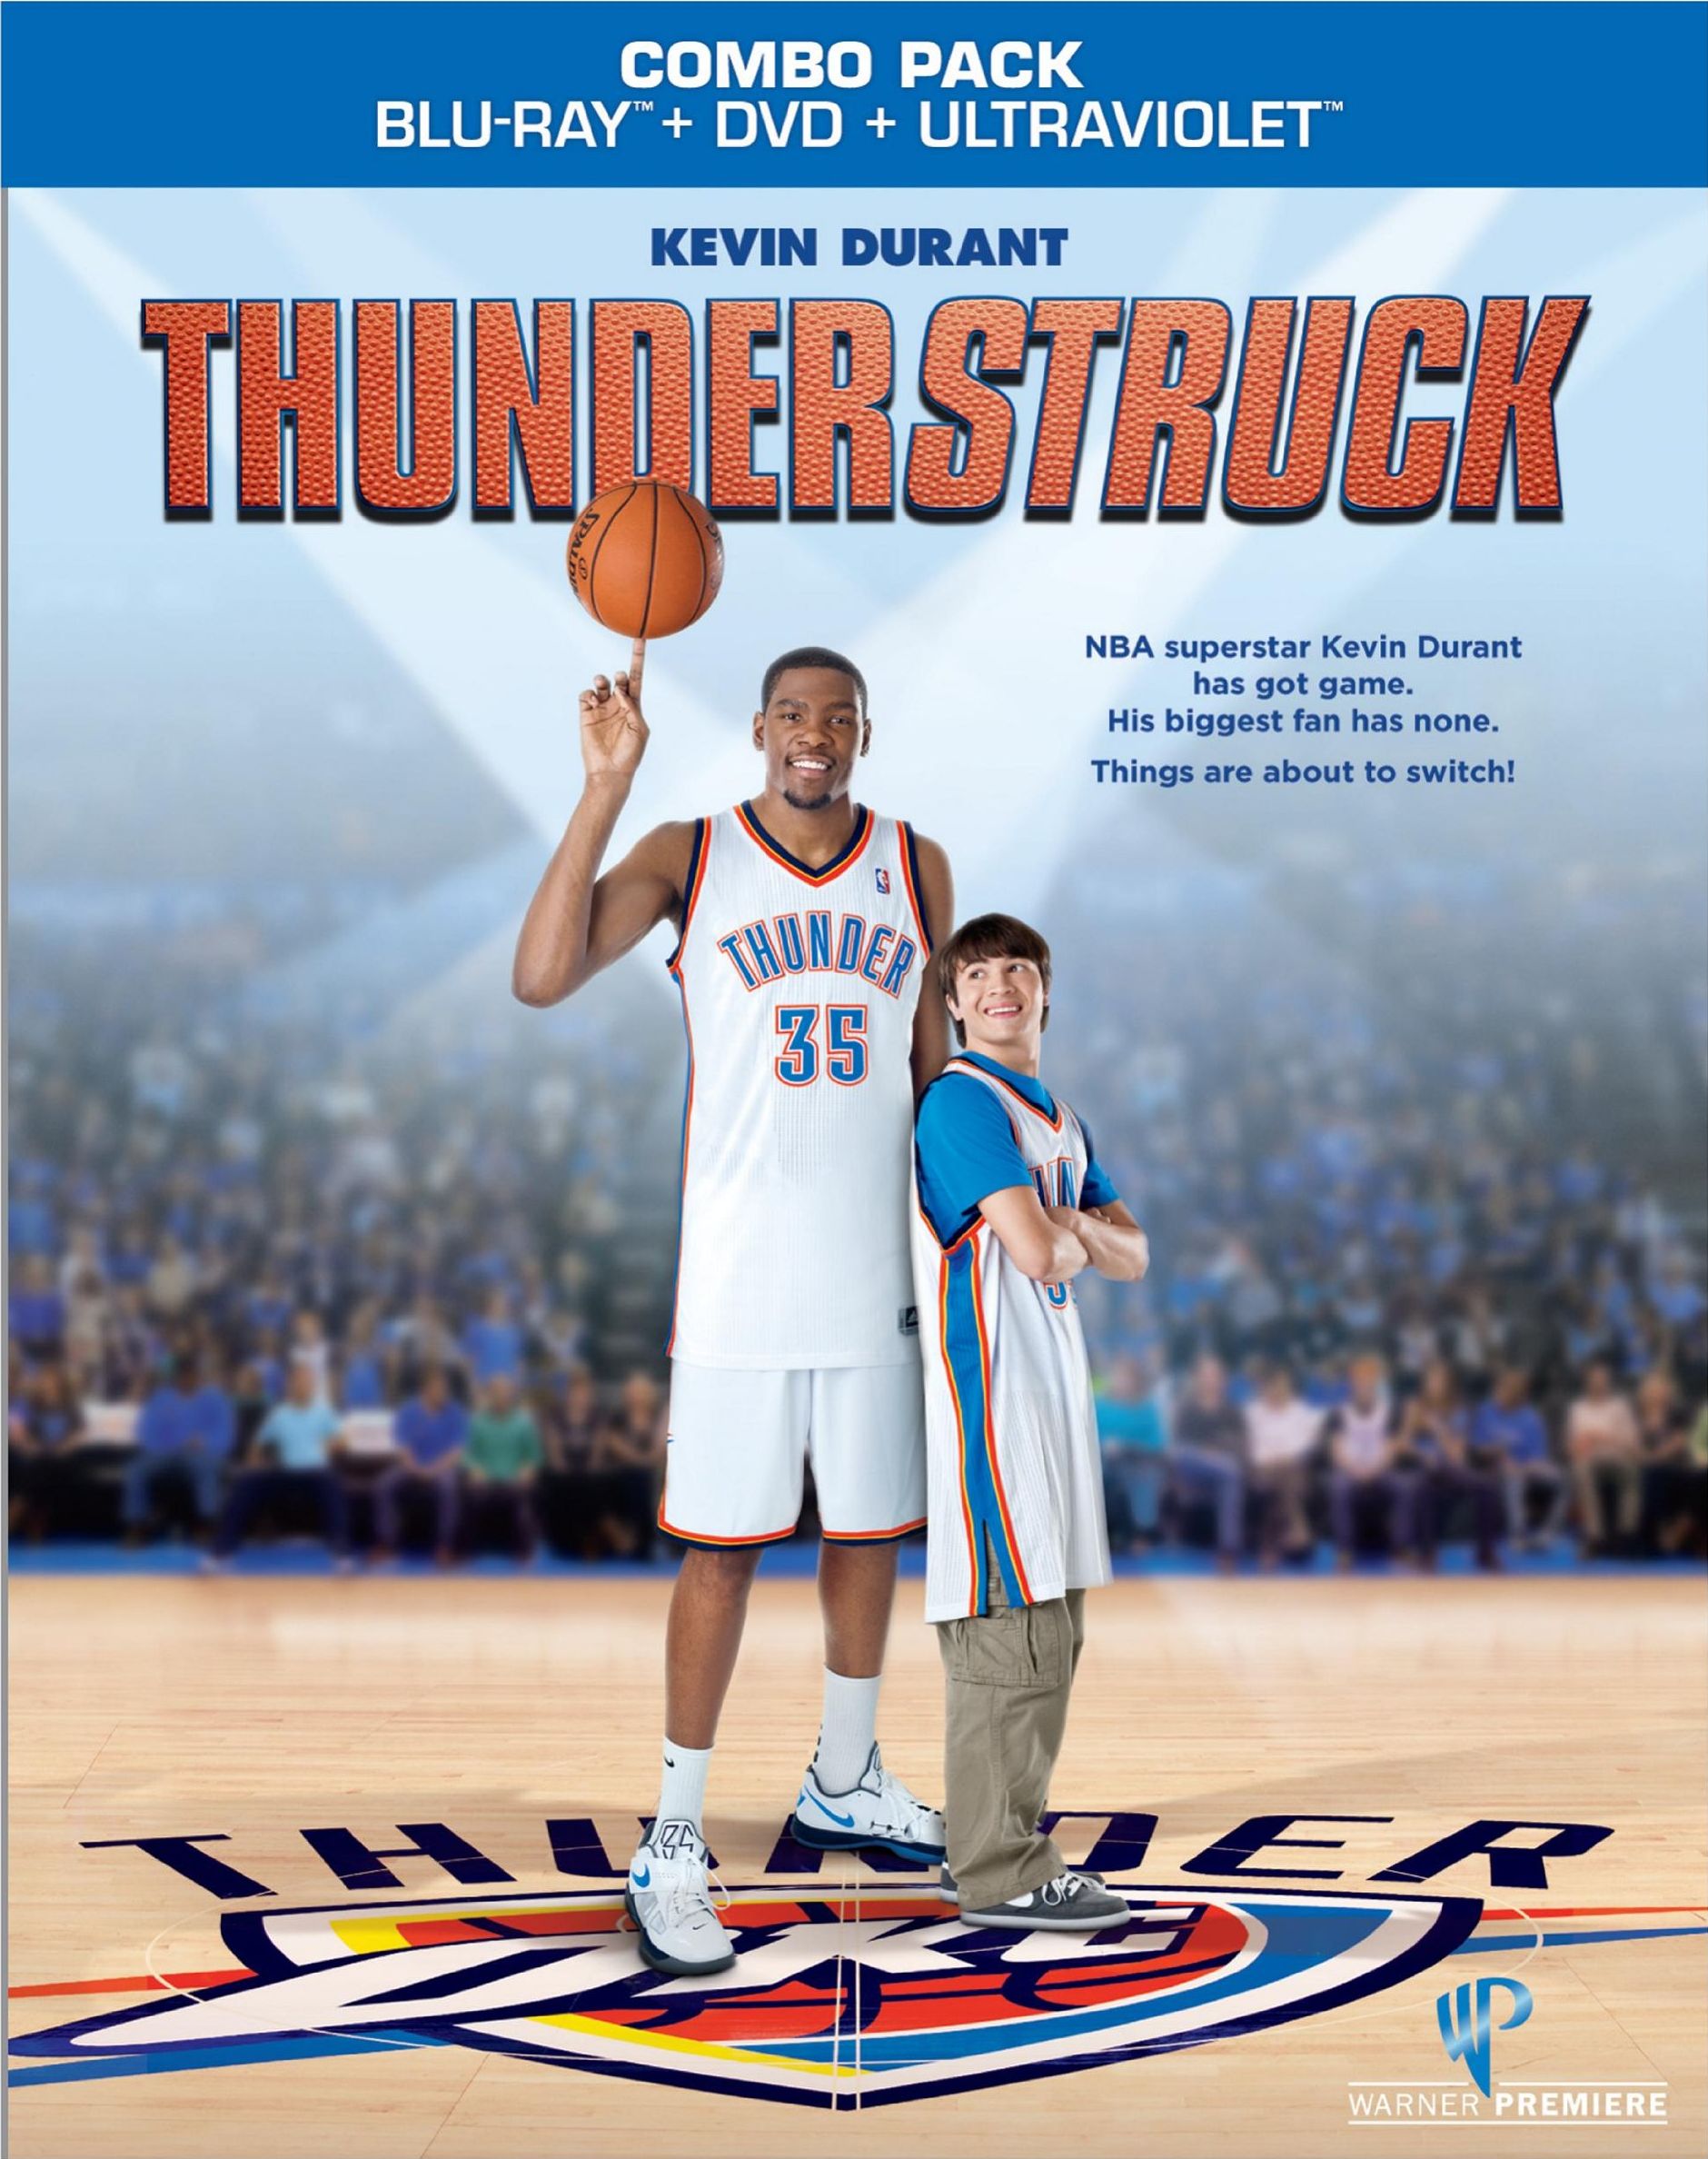 Thunderstruck DVD Release Date December 4, 2012